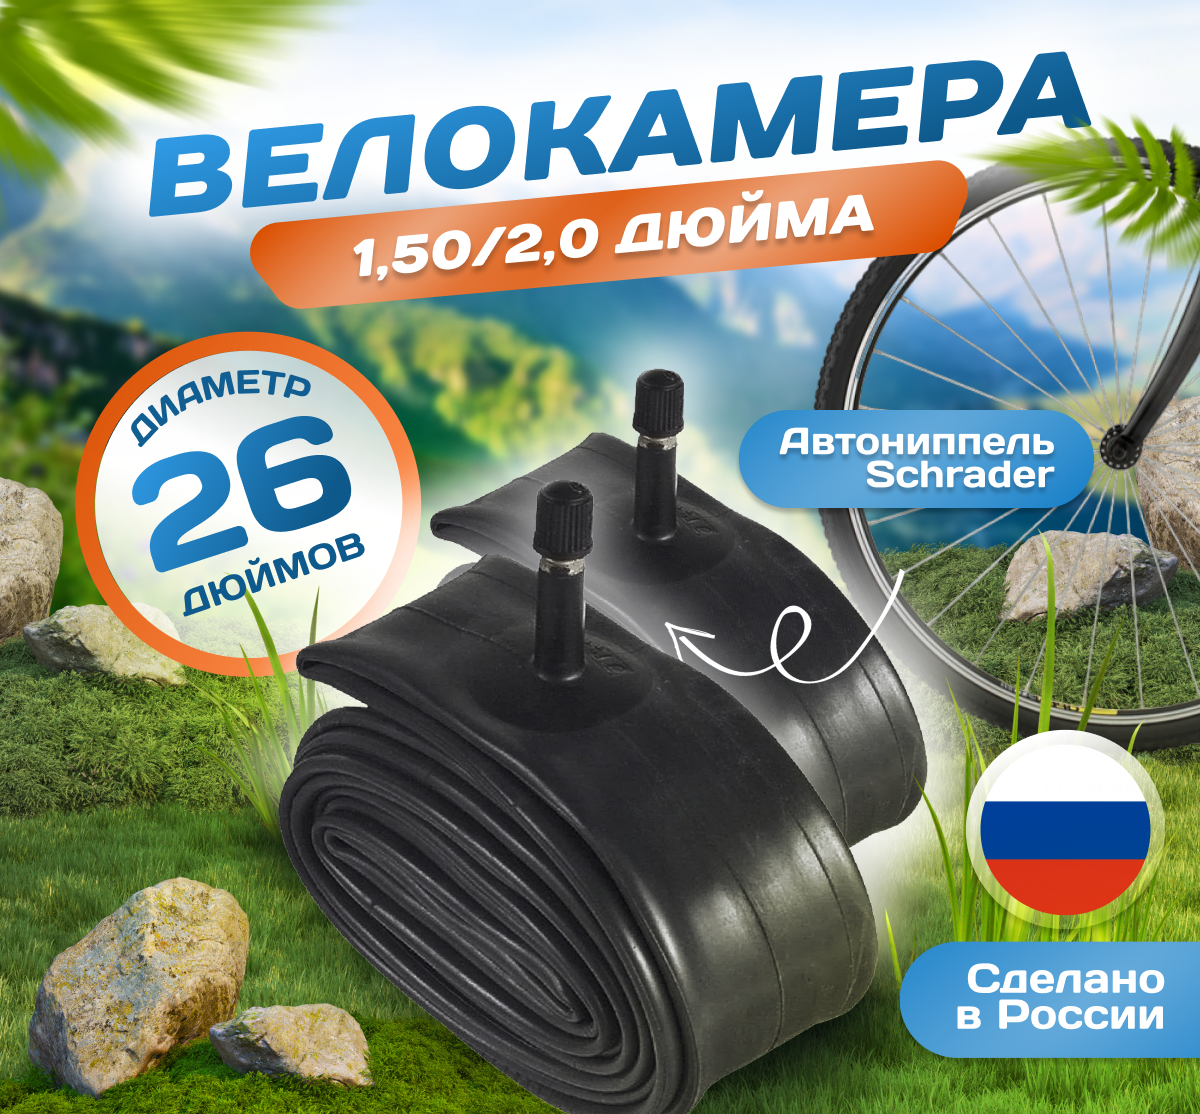 Камера для велосипеда 26х1,50/2.0 (Комплект 2 шт) (40/54-559), Российского производства. Автониппель Schrader 37mm